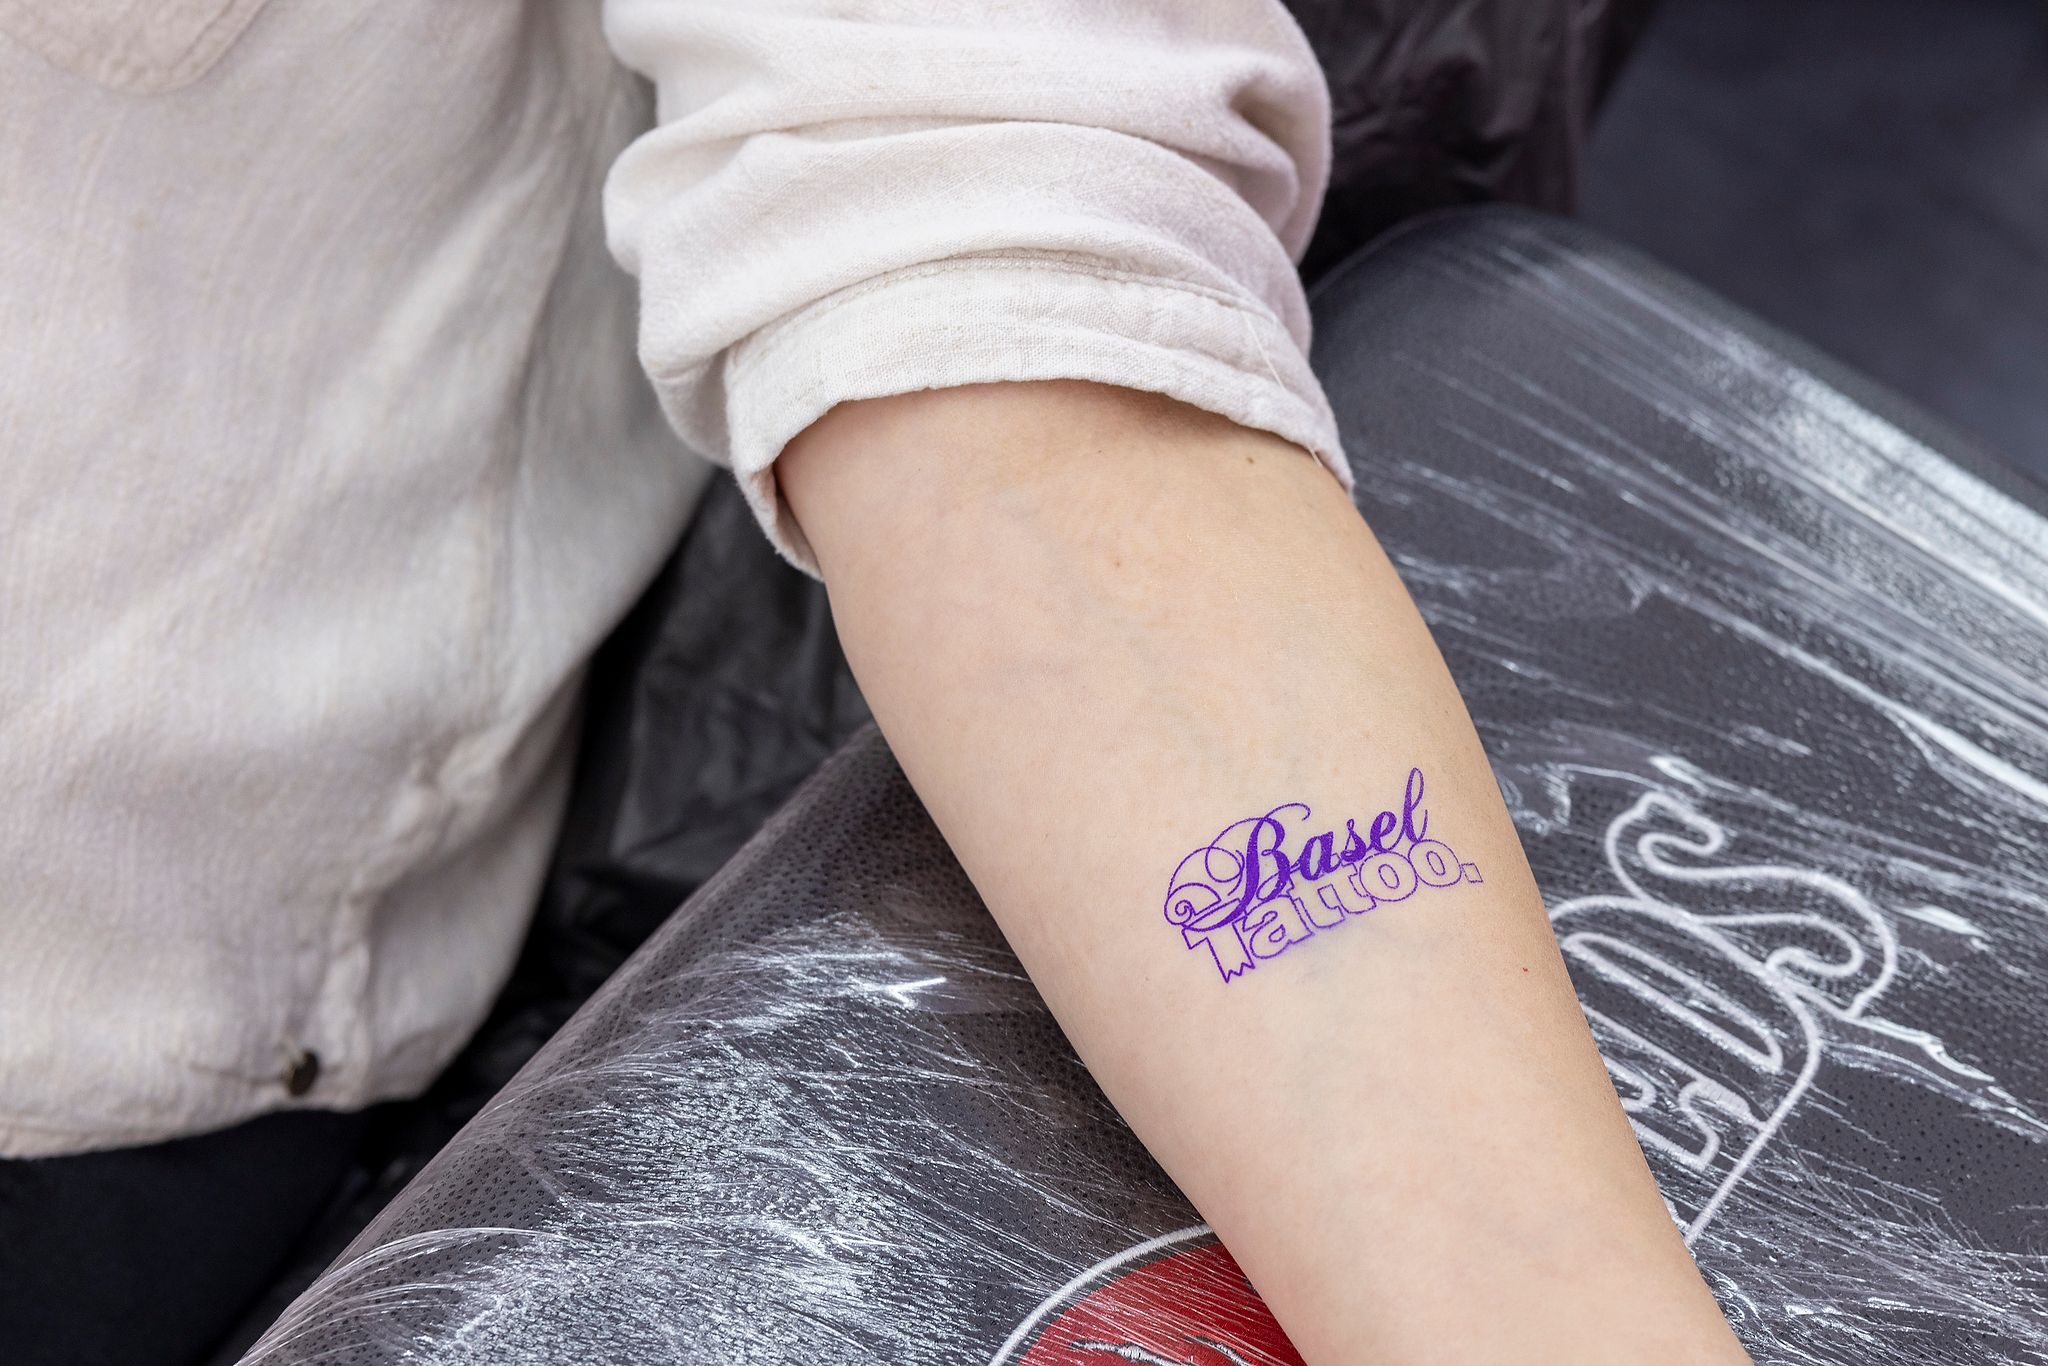 Basel Tattoo Logo kurz vor dem Stechen